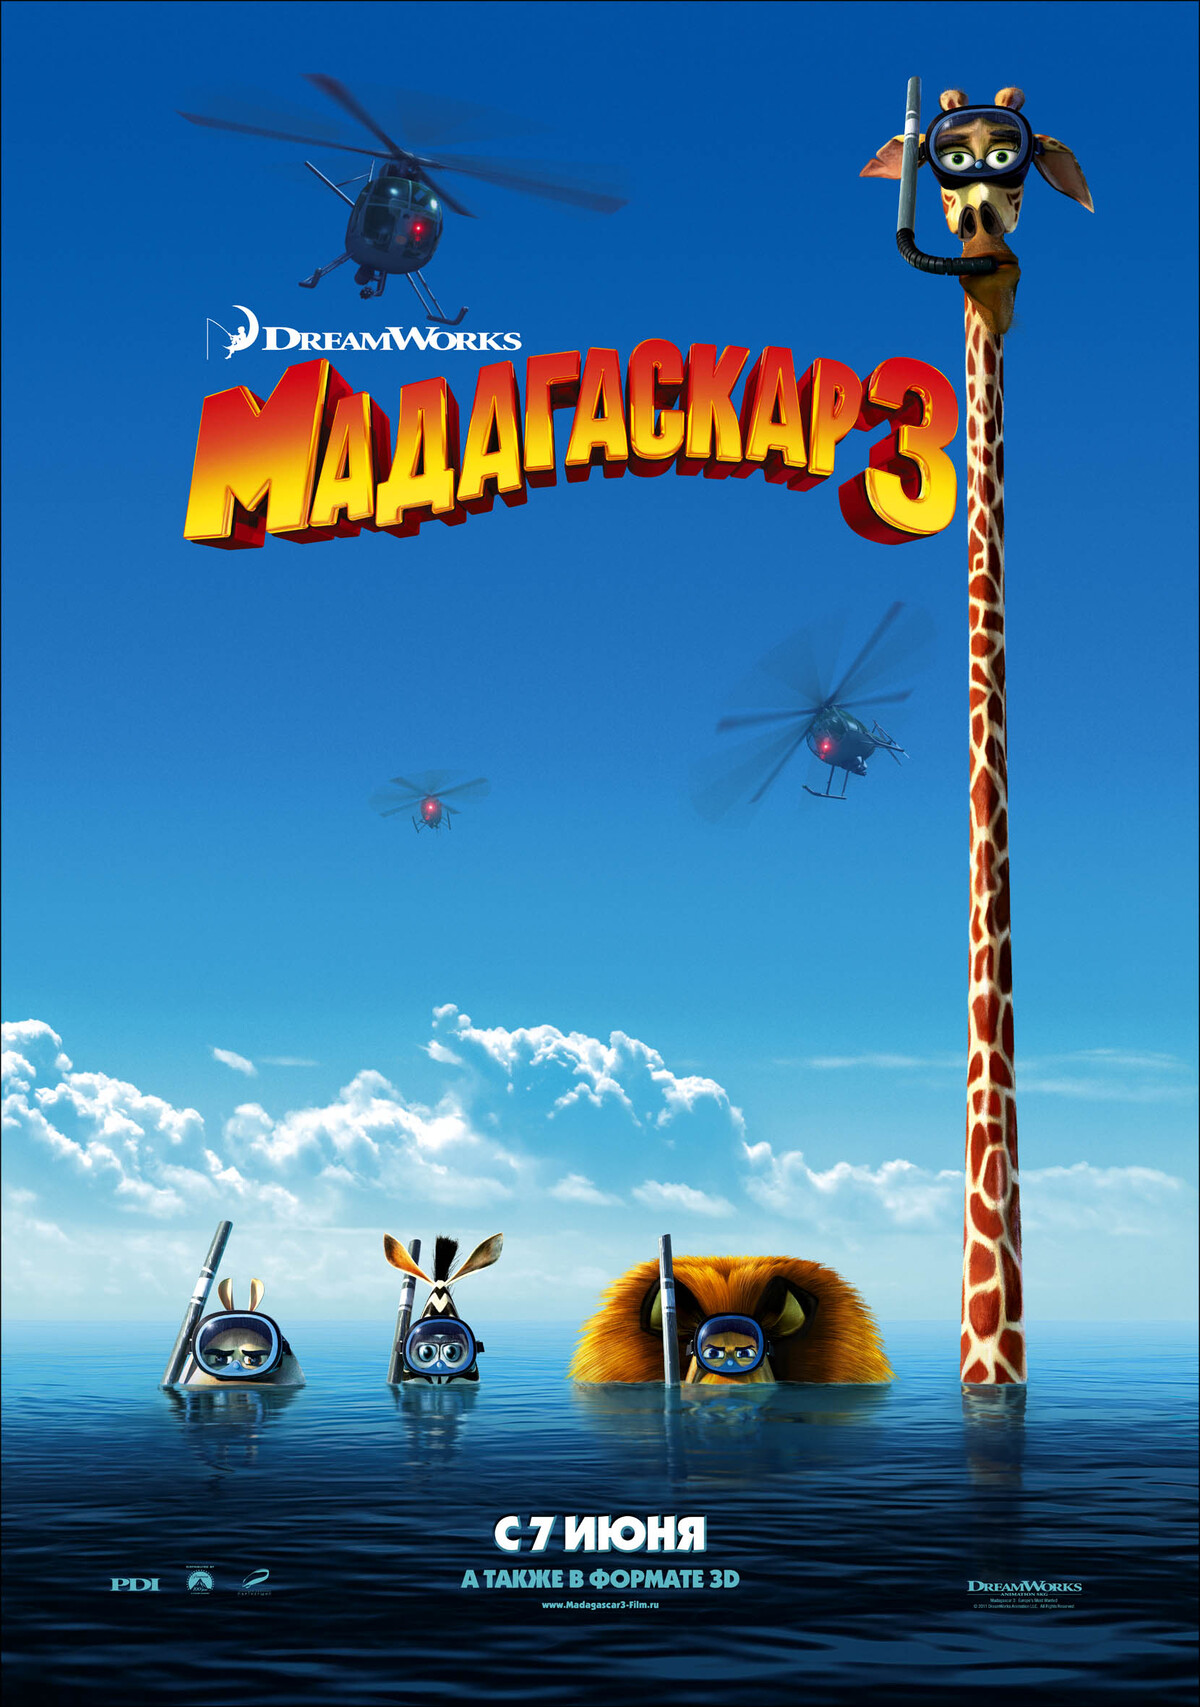 Второй трейлер анимационного фильма "Мадагаскар 3"